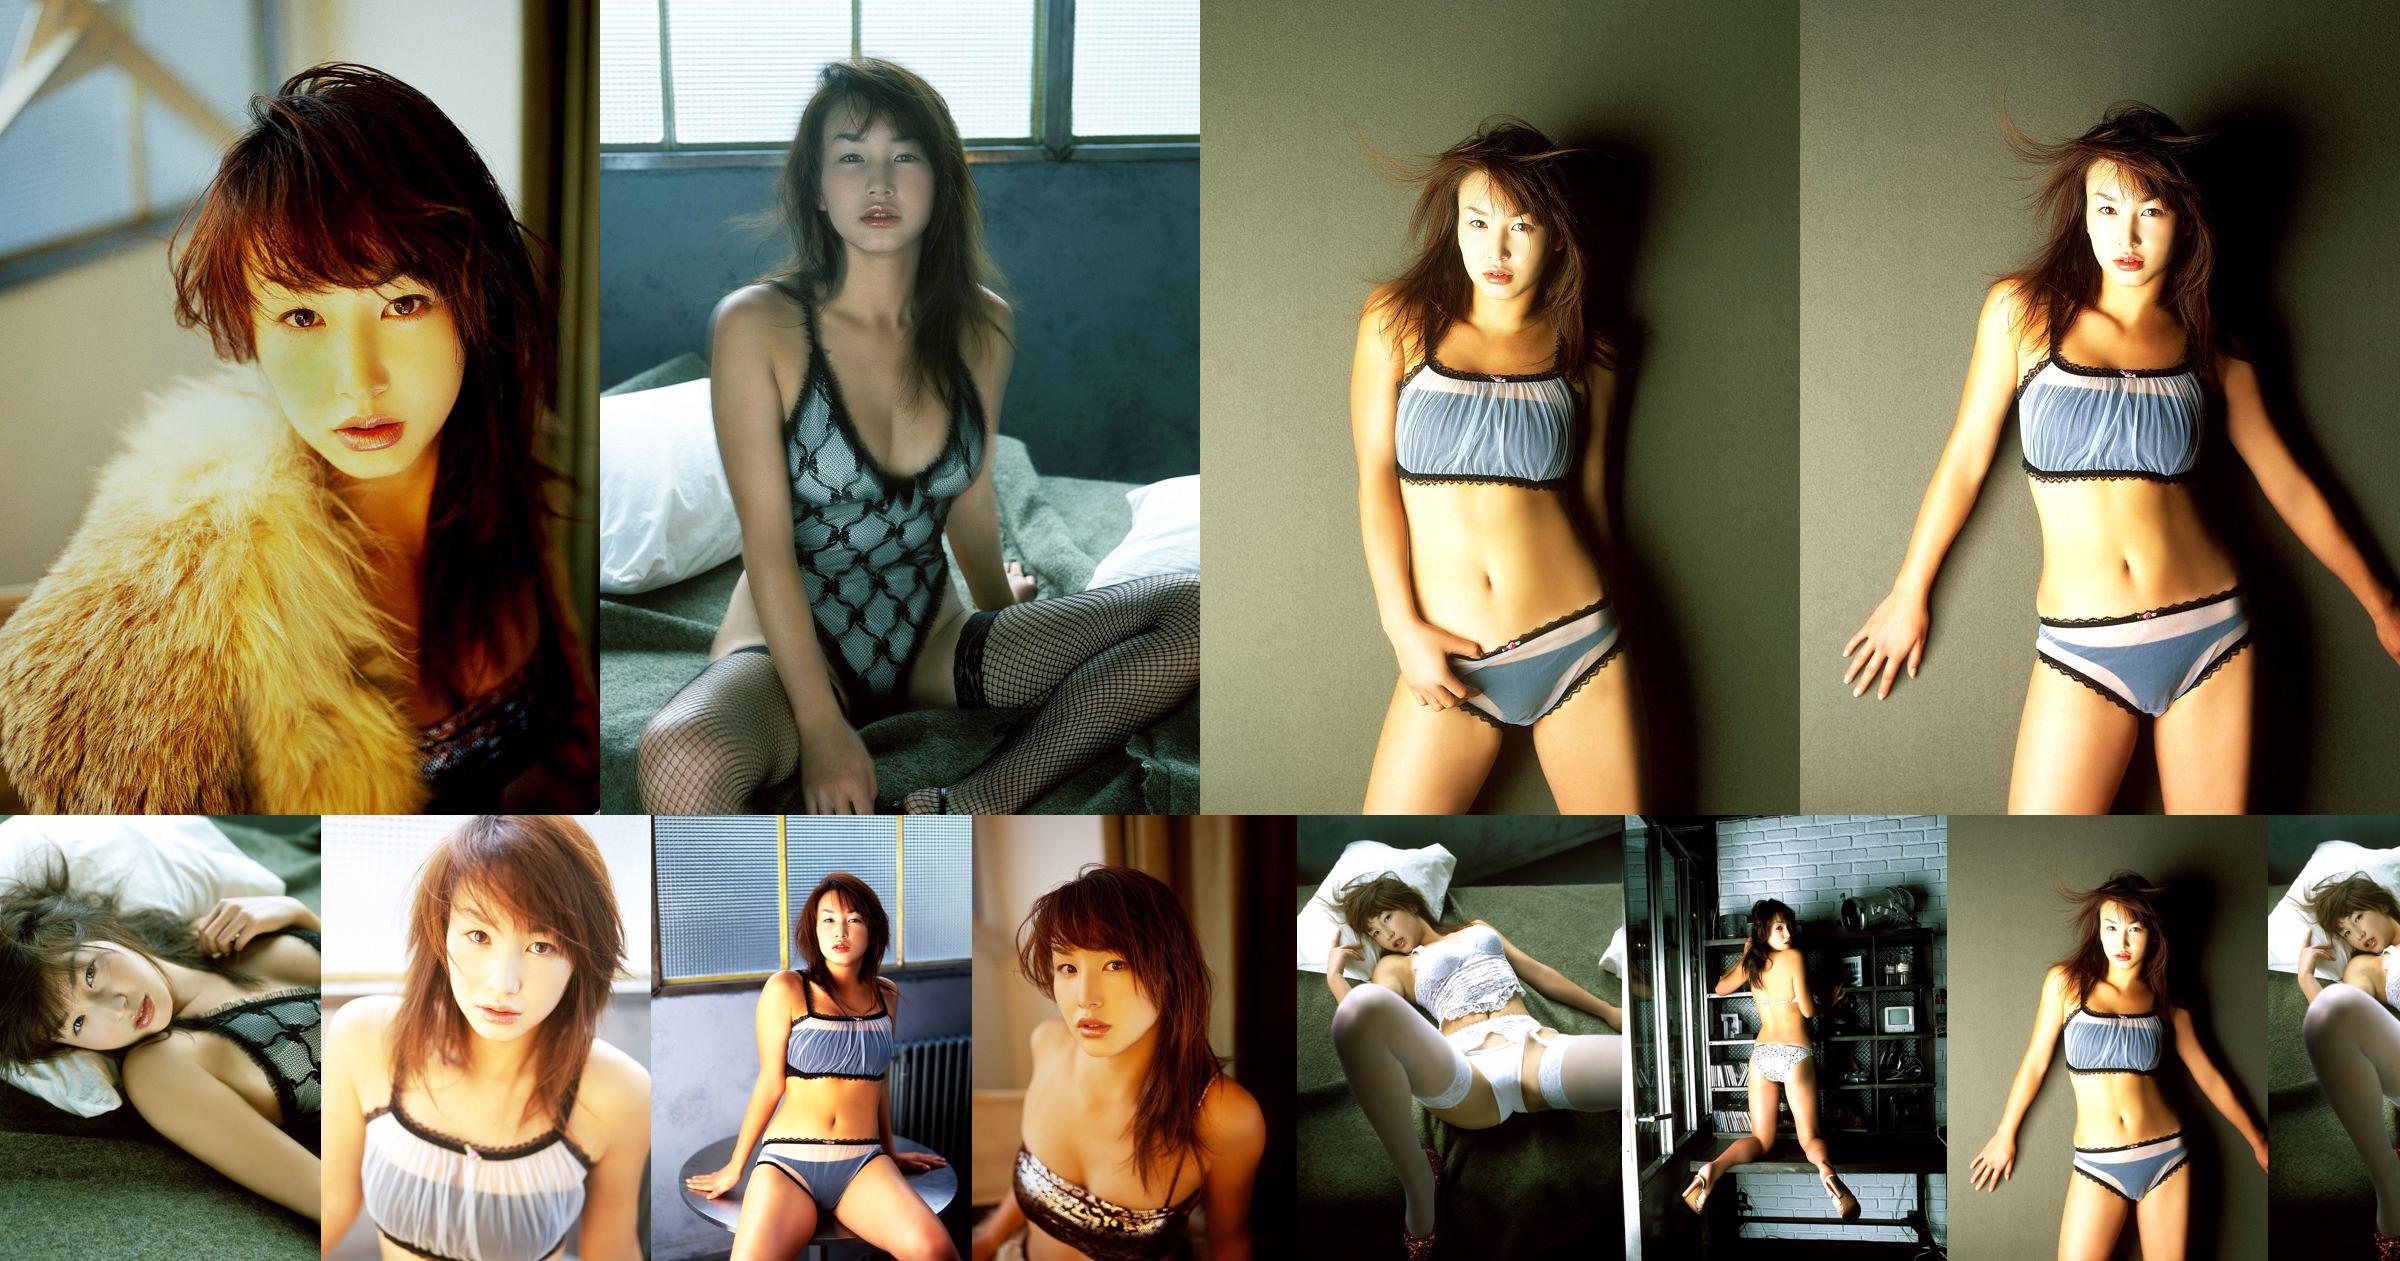 [X-City] Dokkiri Queen No.016 Momo Nakamura / Momo Nakamura Profile No.015b74 Page 1